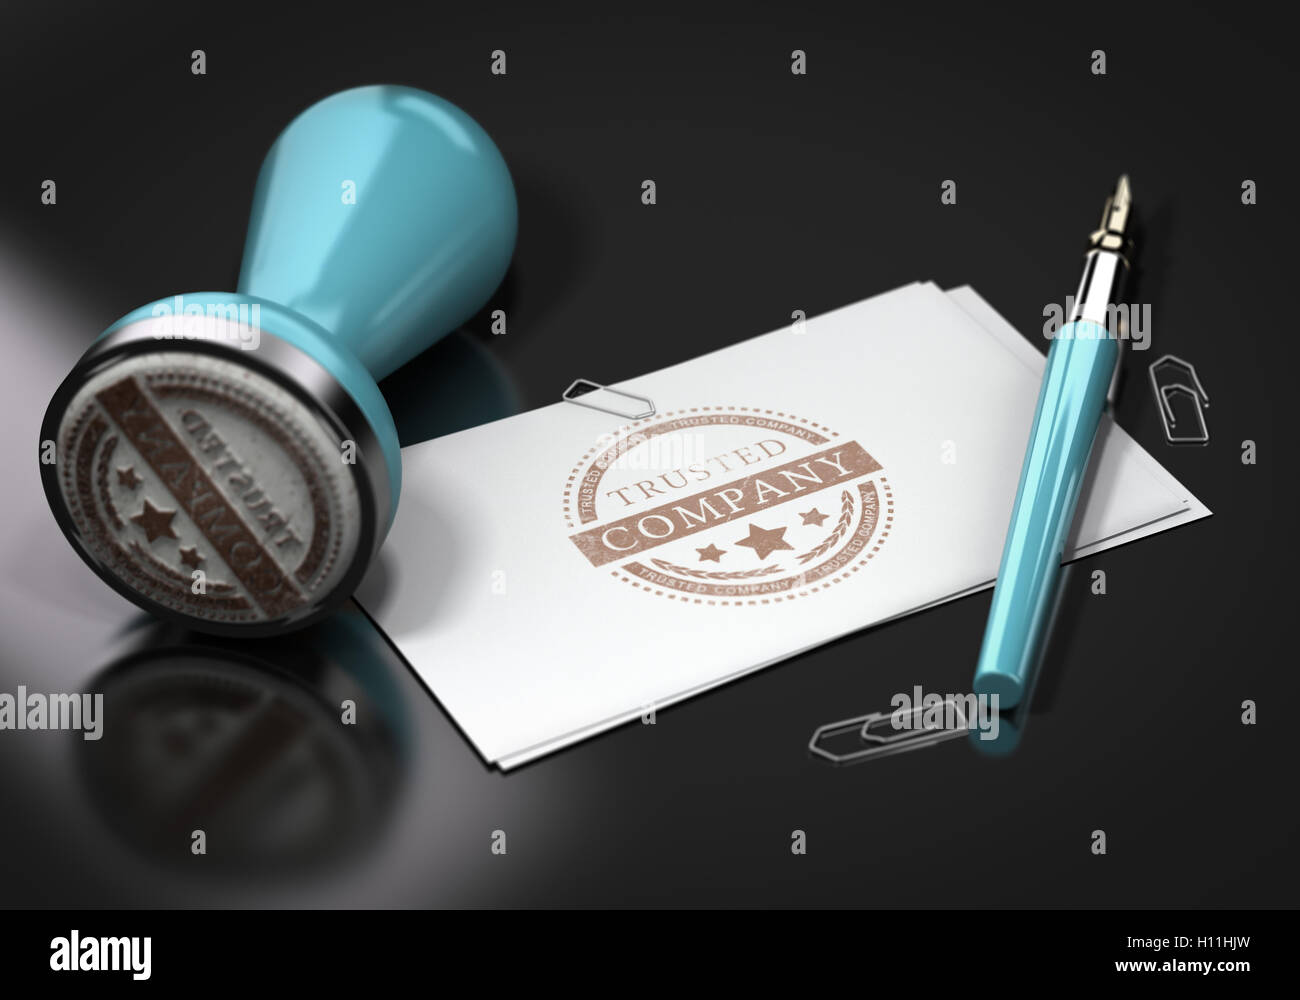 3D illustration de cartes d'affaires avec la société tursted imprimé sur elle. Image sur fond noir avec le tampon de caoutchouc p fontaine Banque D'Images